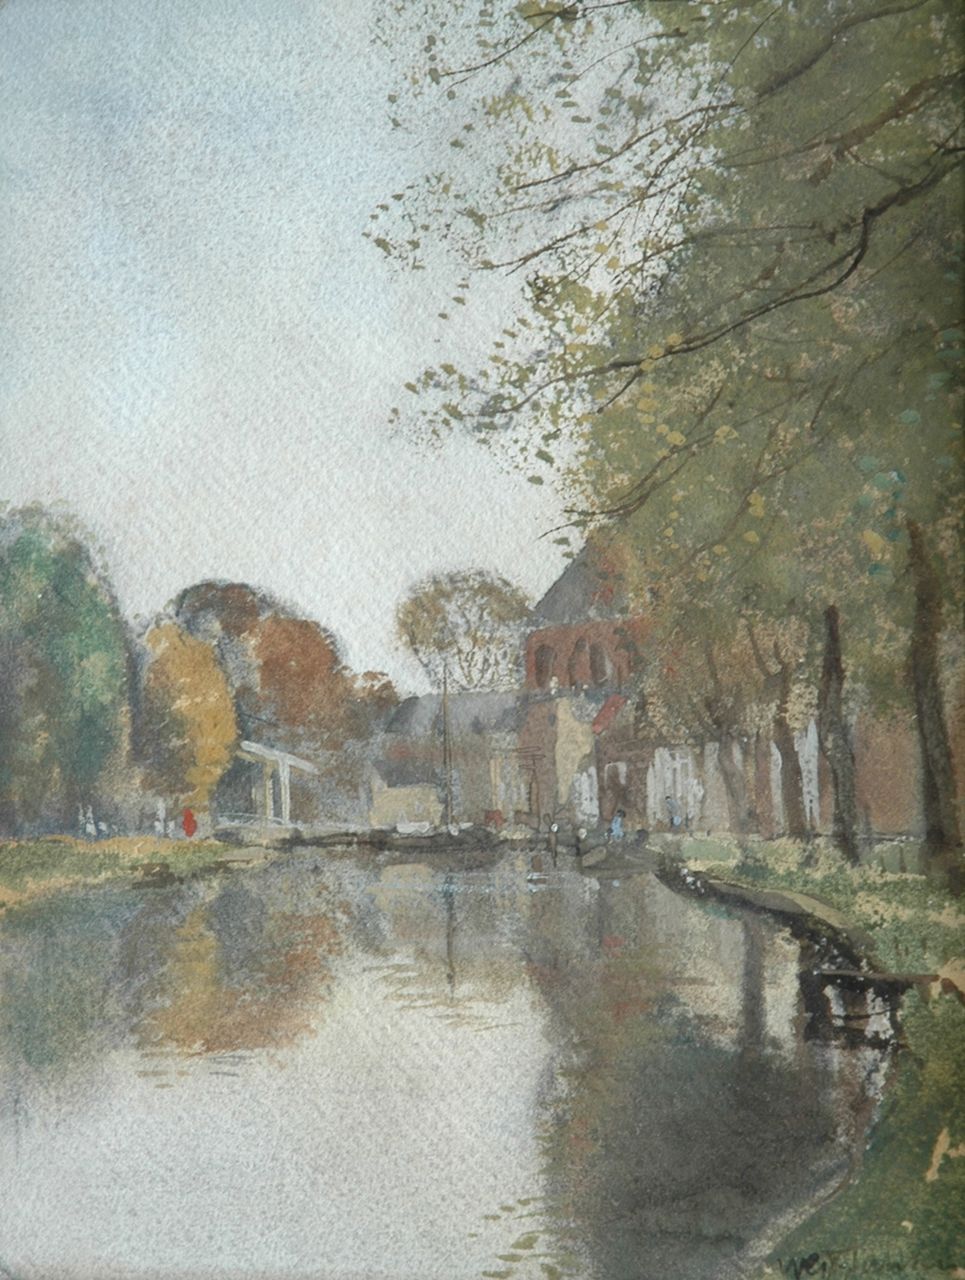 Jansen W.G.F.  | 'Willem' George Frederik Jansen, Vaartje met ophaalbrug, aquarel op papier 29,1 x 22,8 cm, gesigneerd rechtsonder